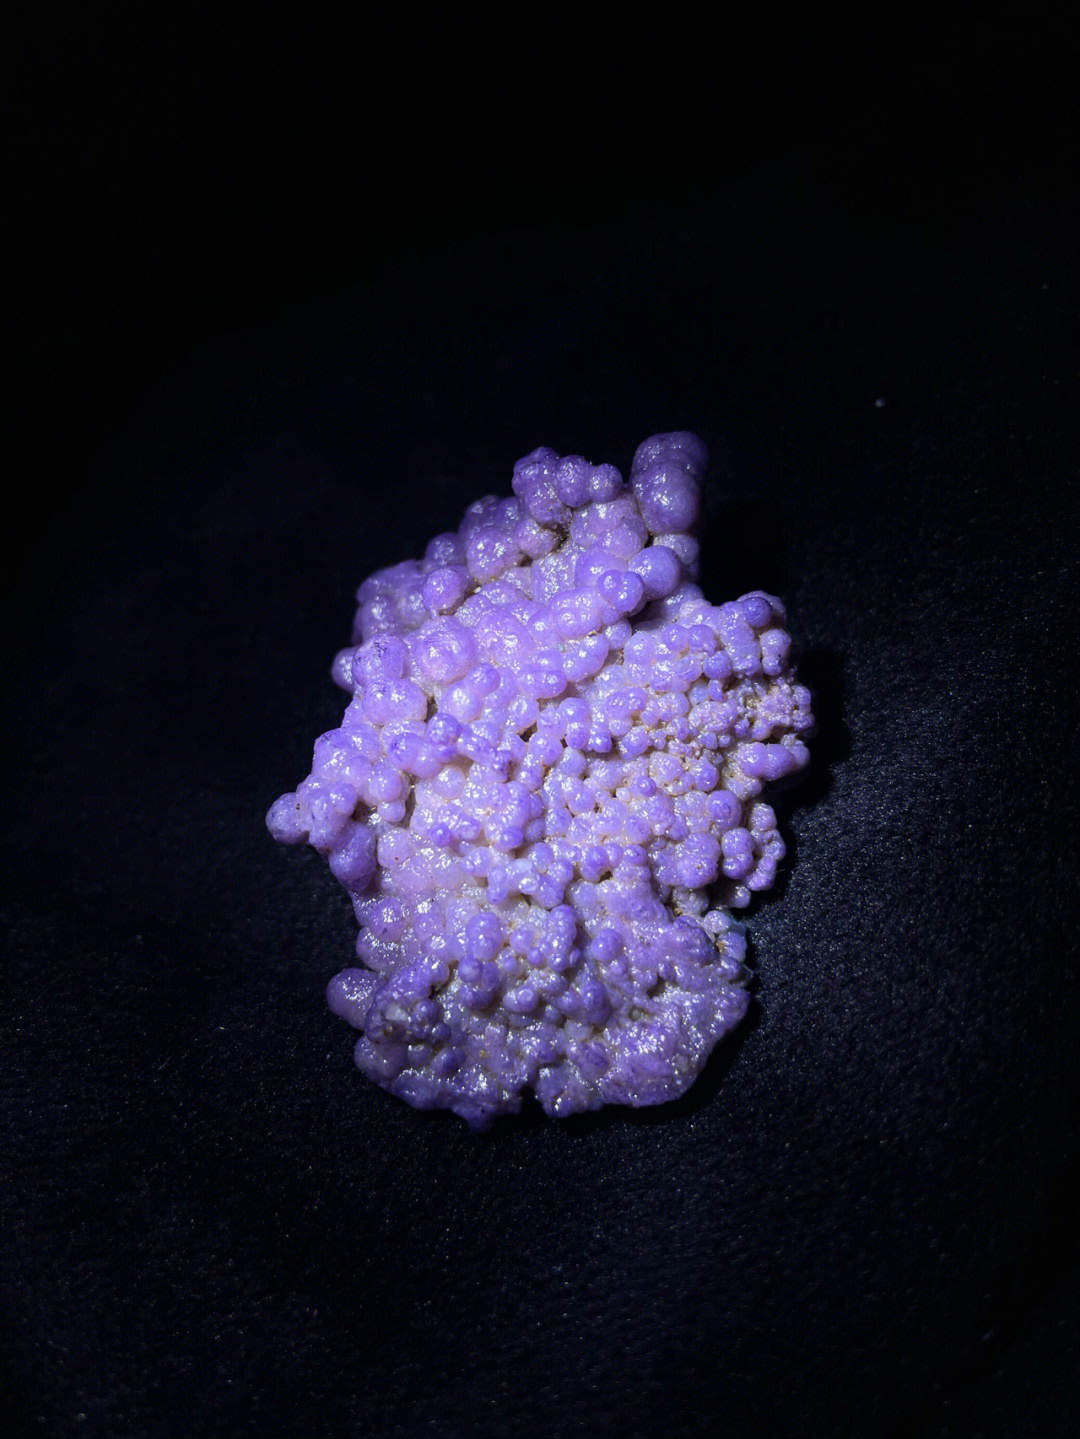 葡萄玛瑙紫珠缀串石头图片